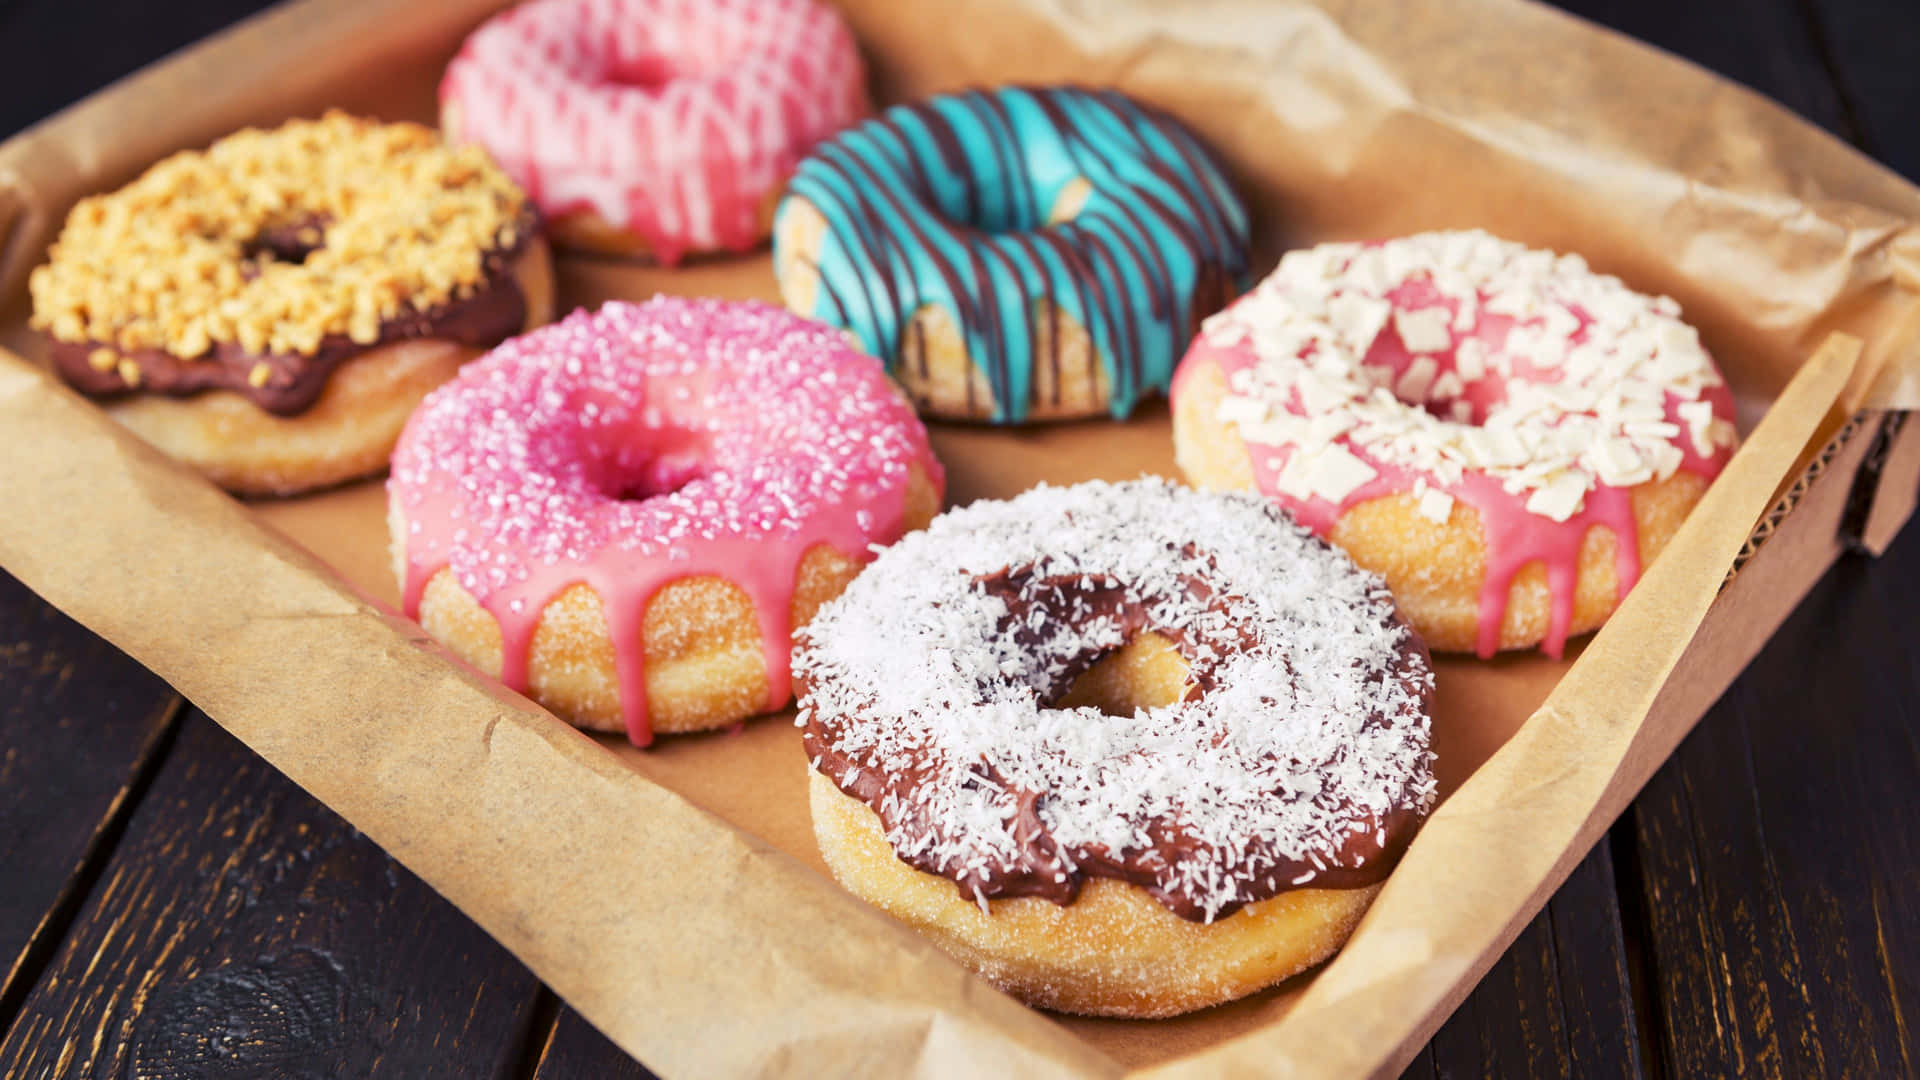 Startedeinen Tag Mit Dunkin Donuts.